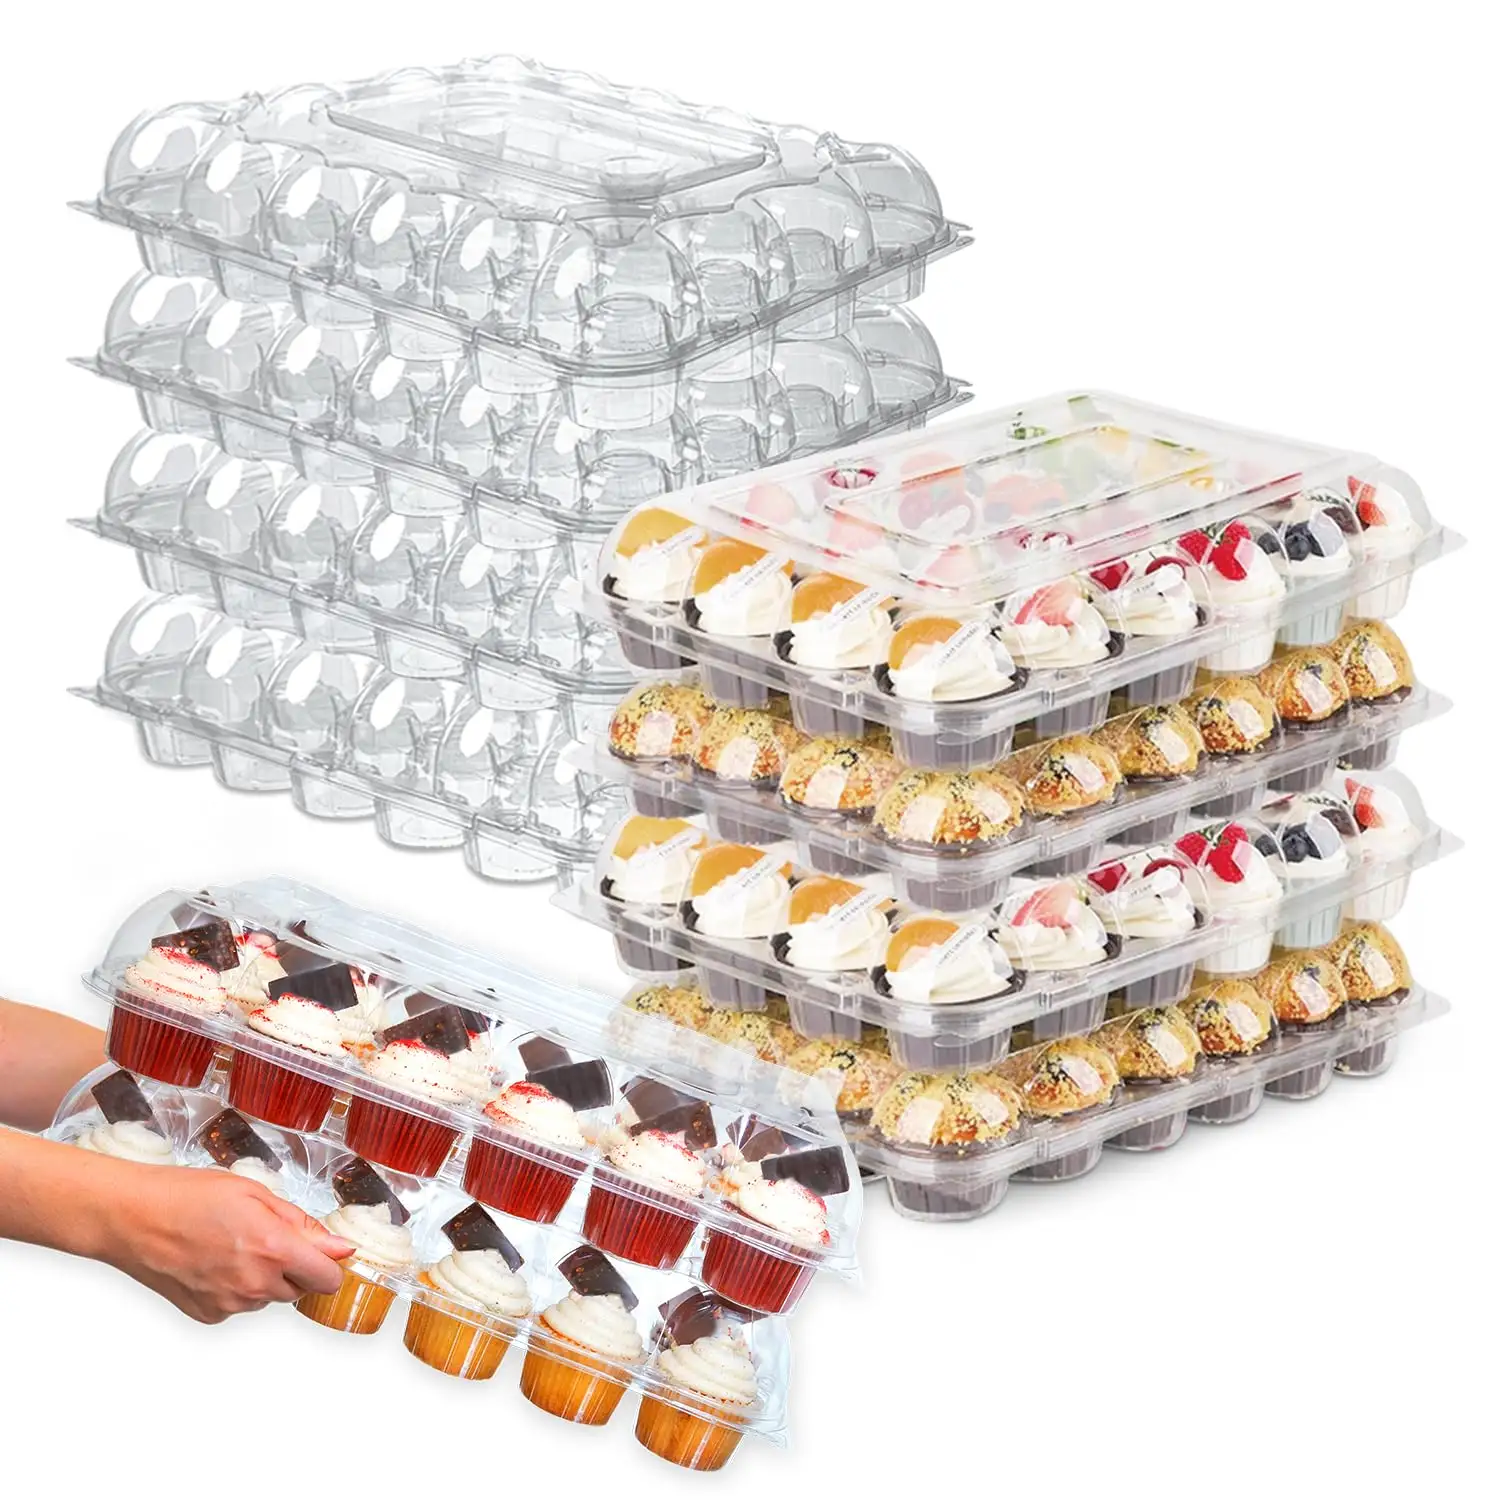 24 boîtes d'emballage empilables pour cupcakes Boîte d'emballage jetable pour cupcakes de voyage Conteneur de transport transparent pour boulangerie et desserts